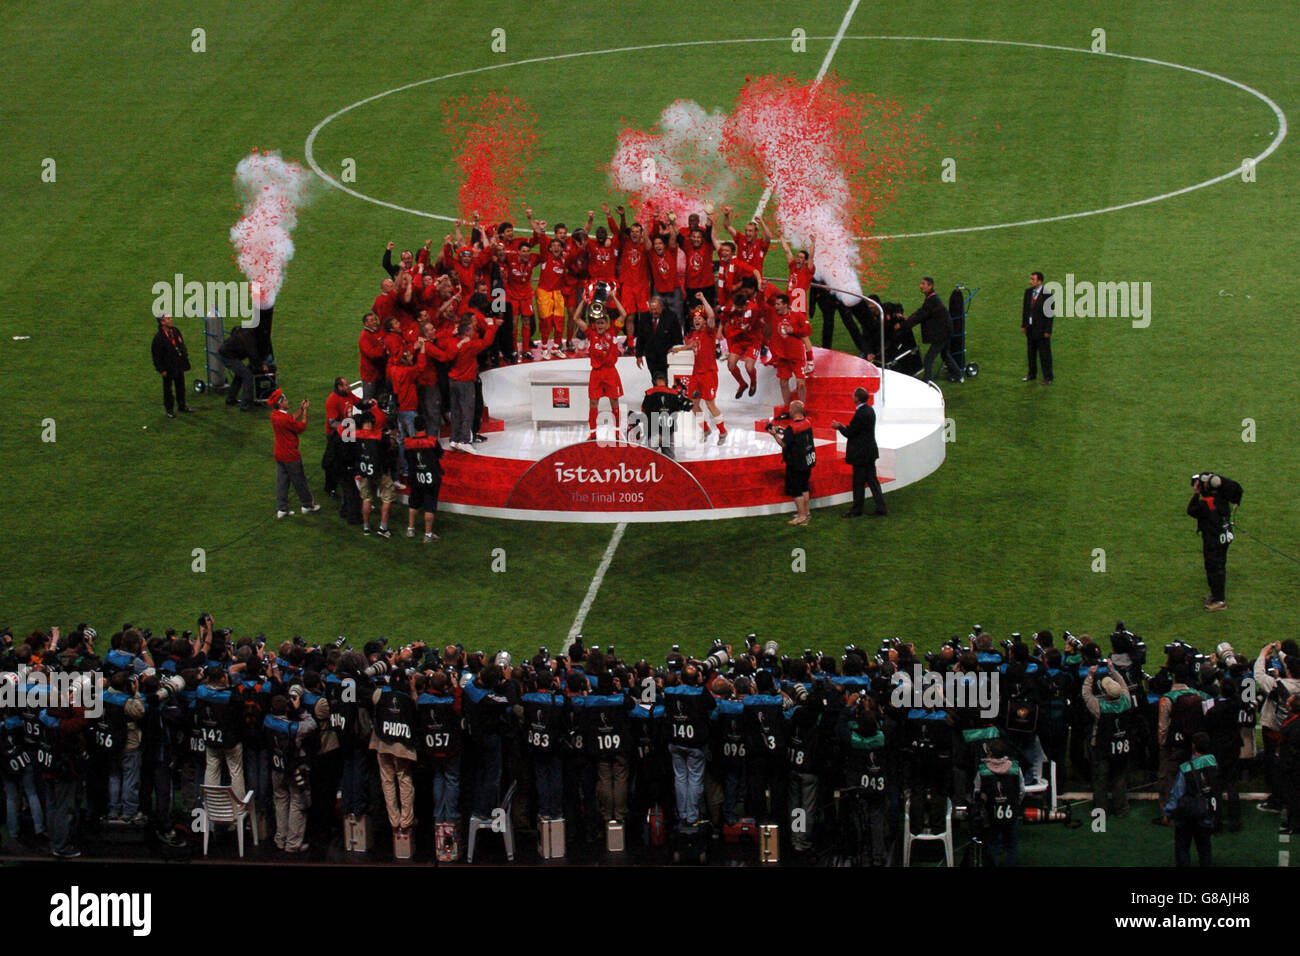 Football - Ligue des champions de l'UEFA - finale - AC Milan / Liverpool - Stade olympique Ataturk.Le capitaine de Liverpool Steven Gerrard lève le trophée de la Ligue des champions de l'UEFA Banque D'Images